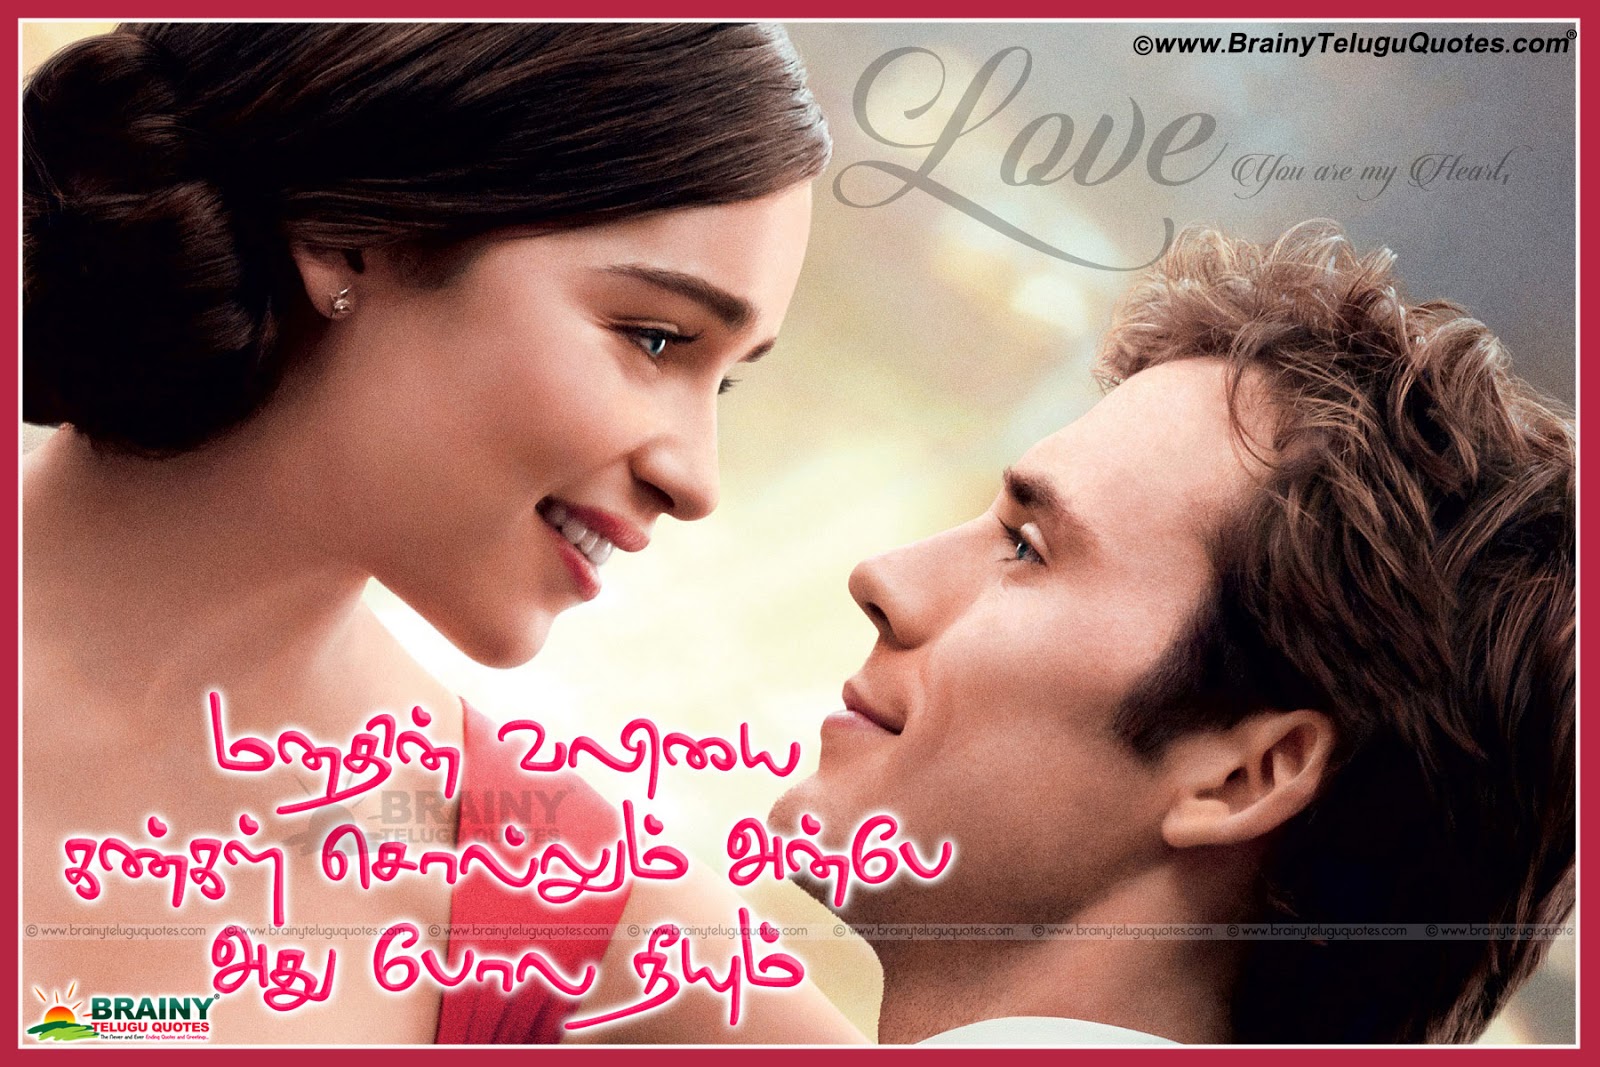 True Love Husband Love Quotes In Tamil - Deiafa Ganello